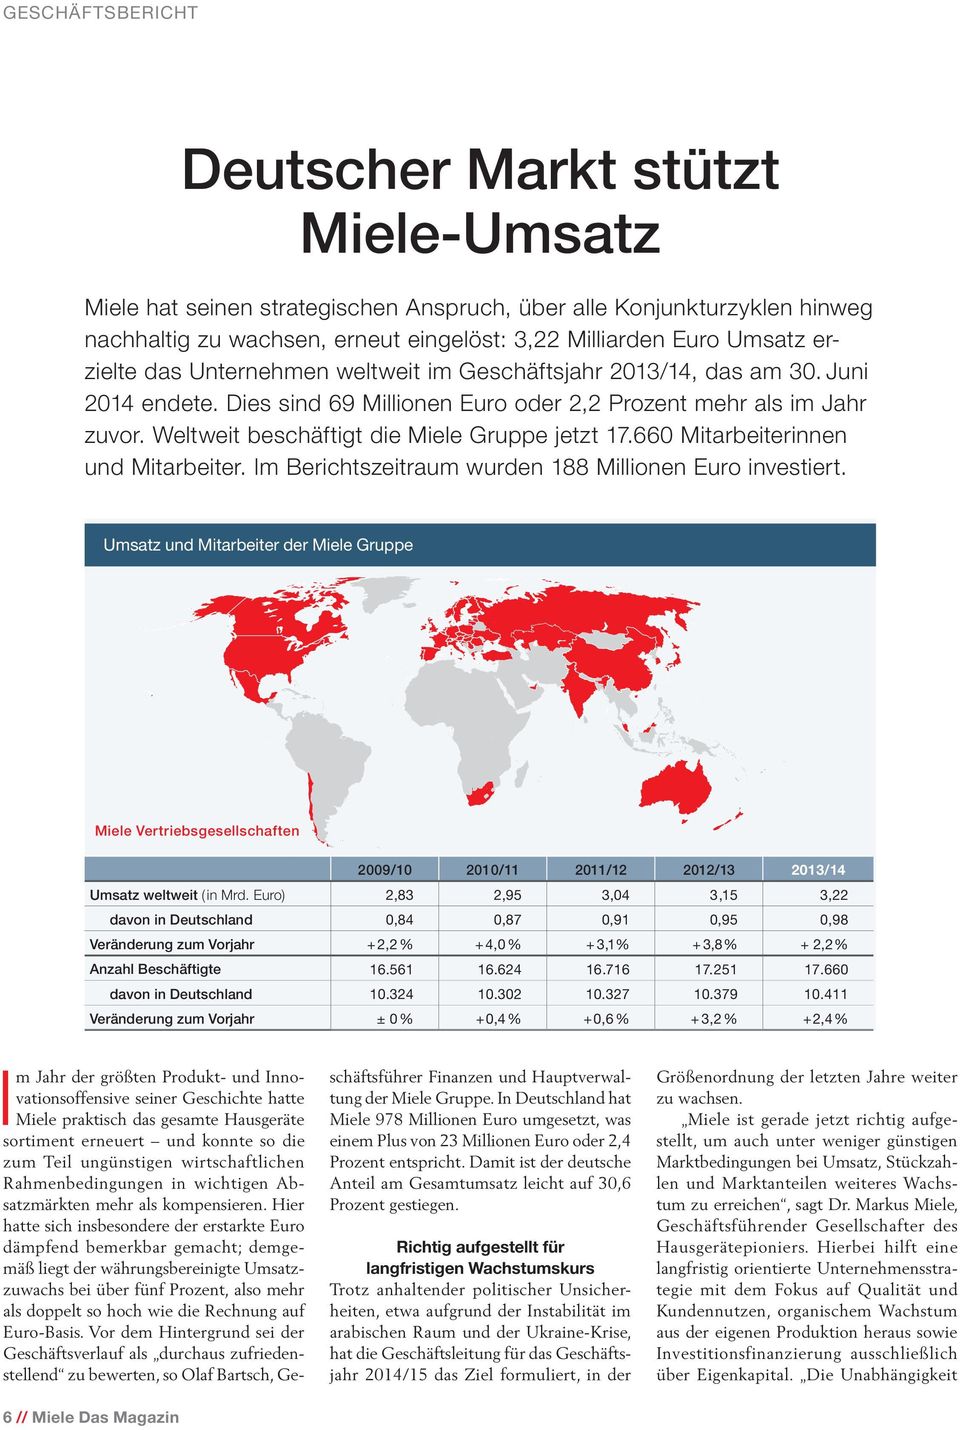 Weltweit beschäftigt die Miele Gruppe jetzt 17.660 Mitarbeiterinnen und Mitarbeiter. Im Berichtszeitraum wurden 188 Millionen Euro investiert.